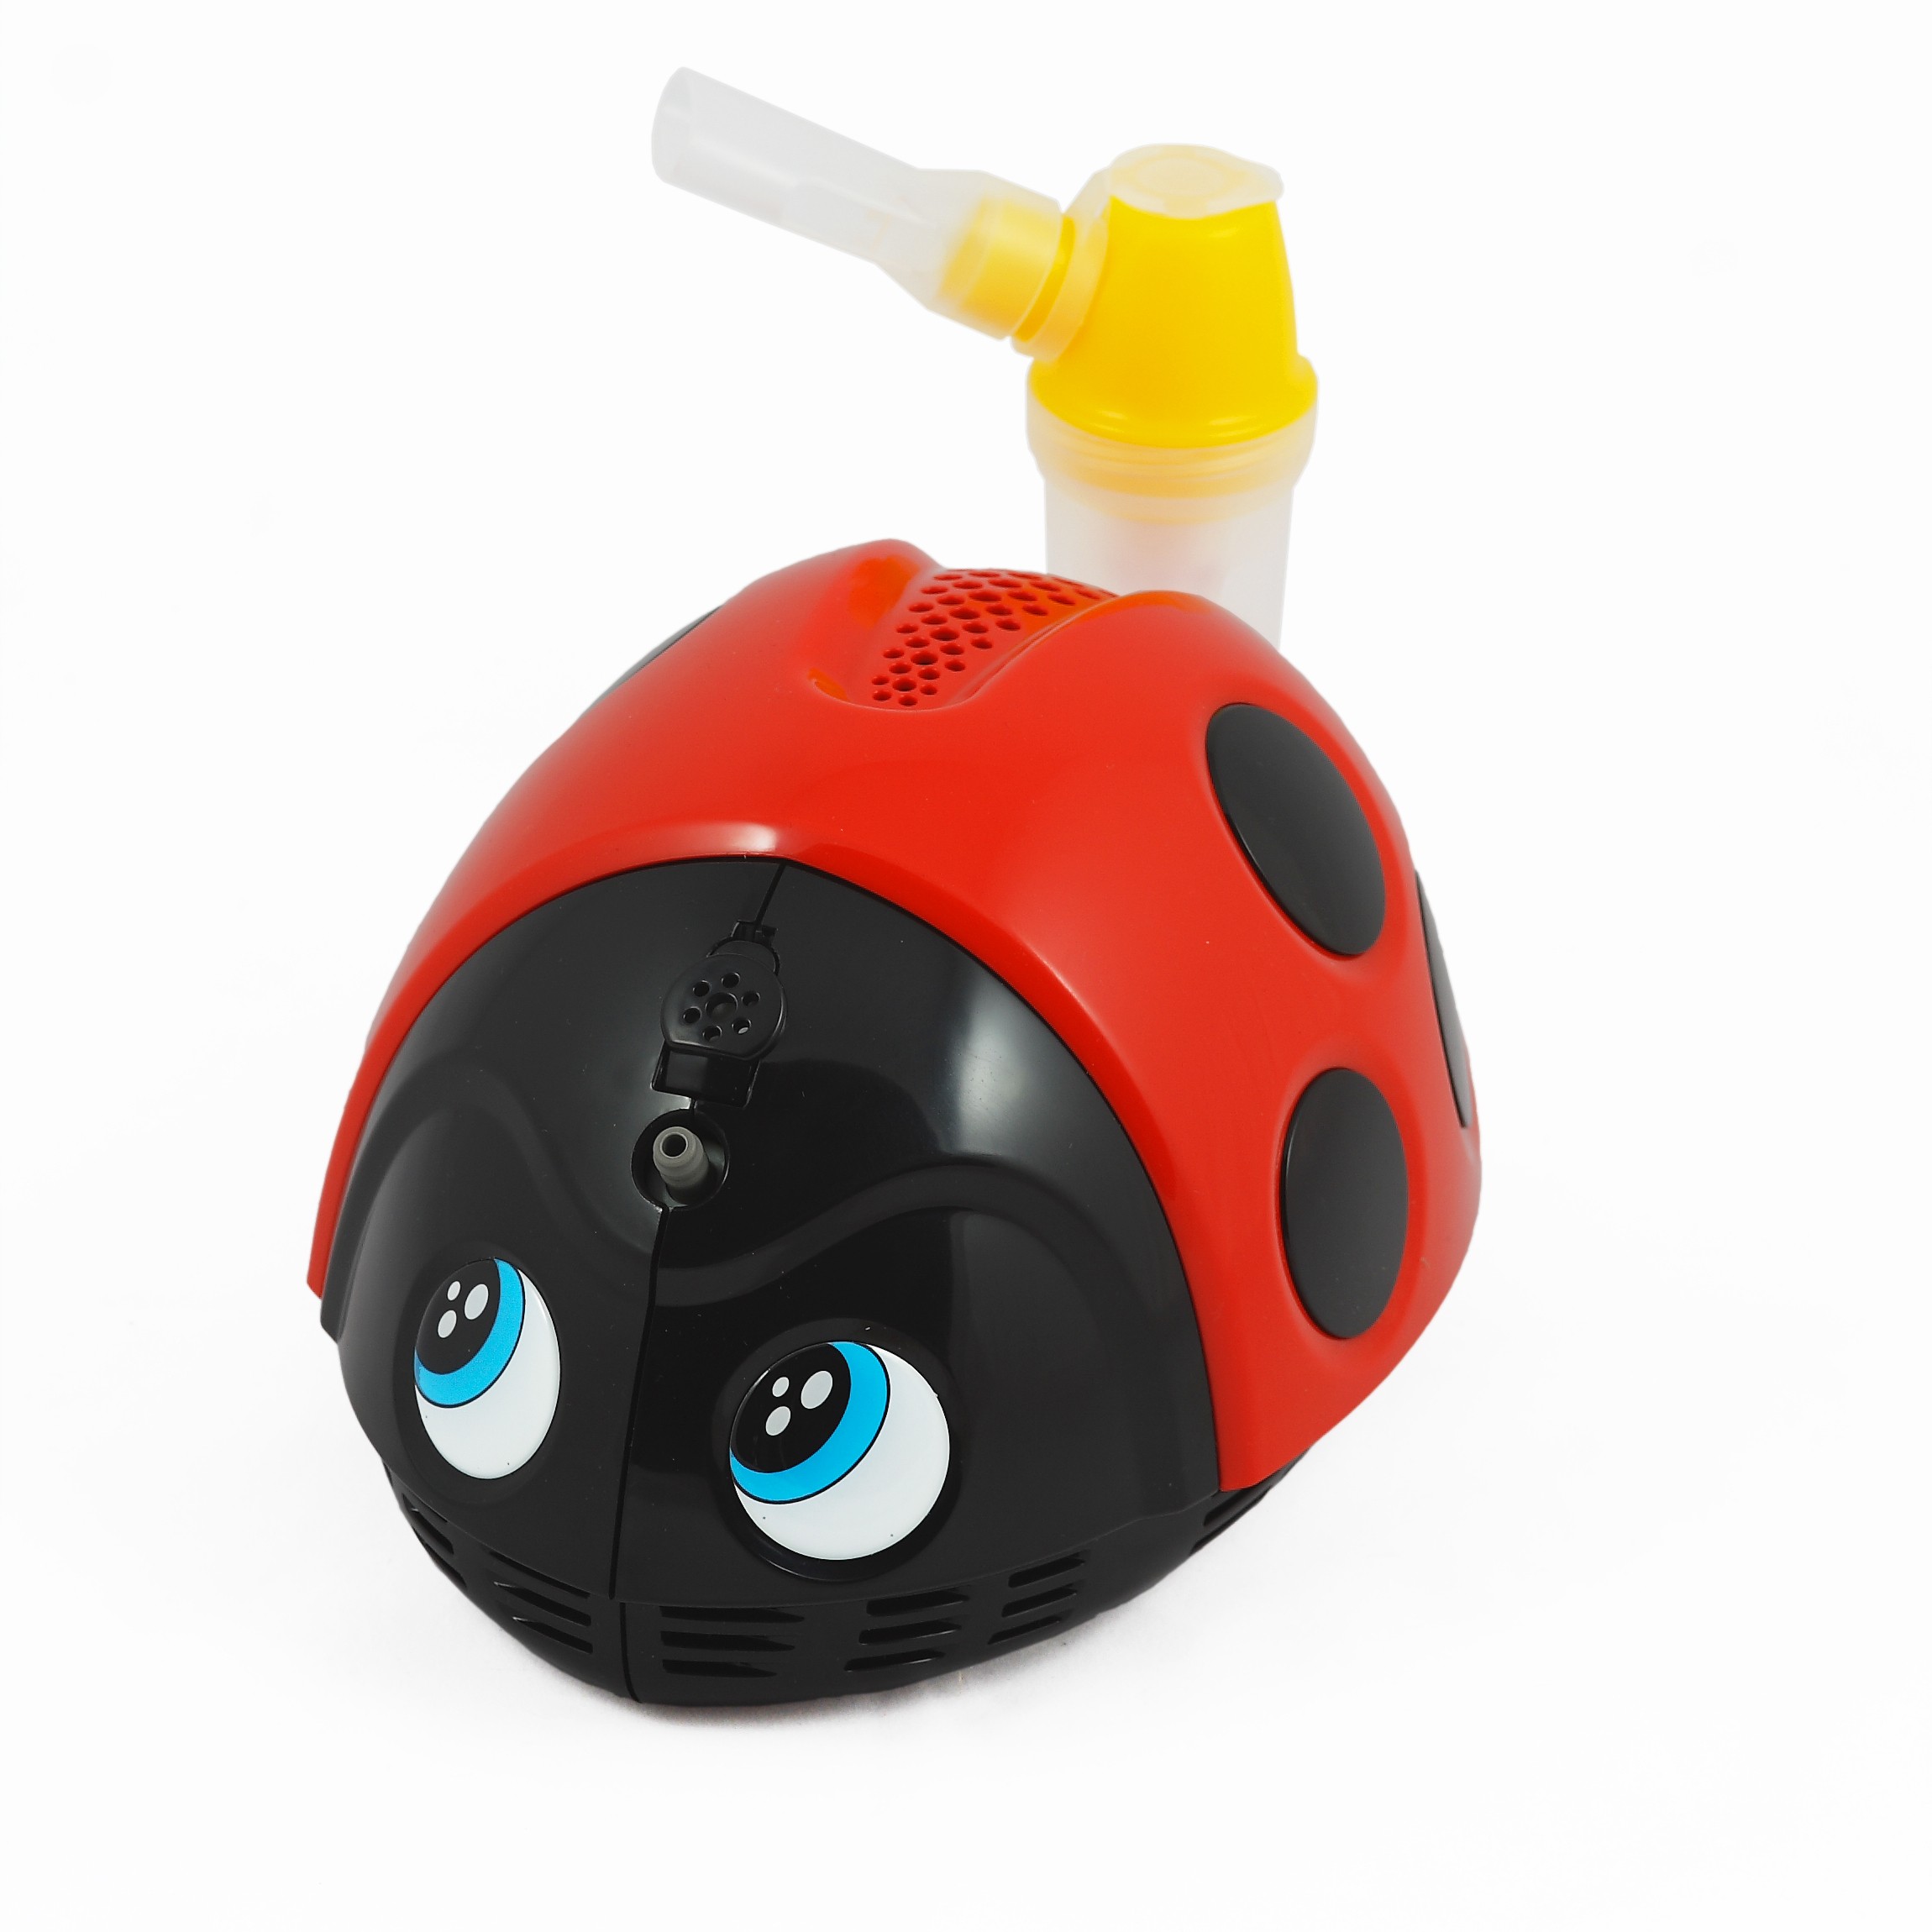 inhalator,inhalator dla dzieci,inhalator biedronka,aparat do inhalacji,astma,choroby dróg odechowych